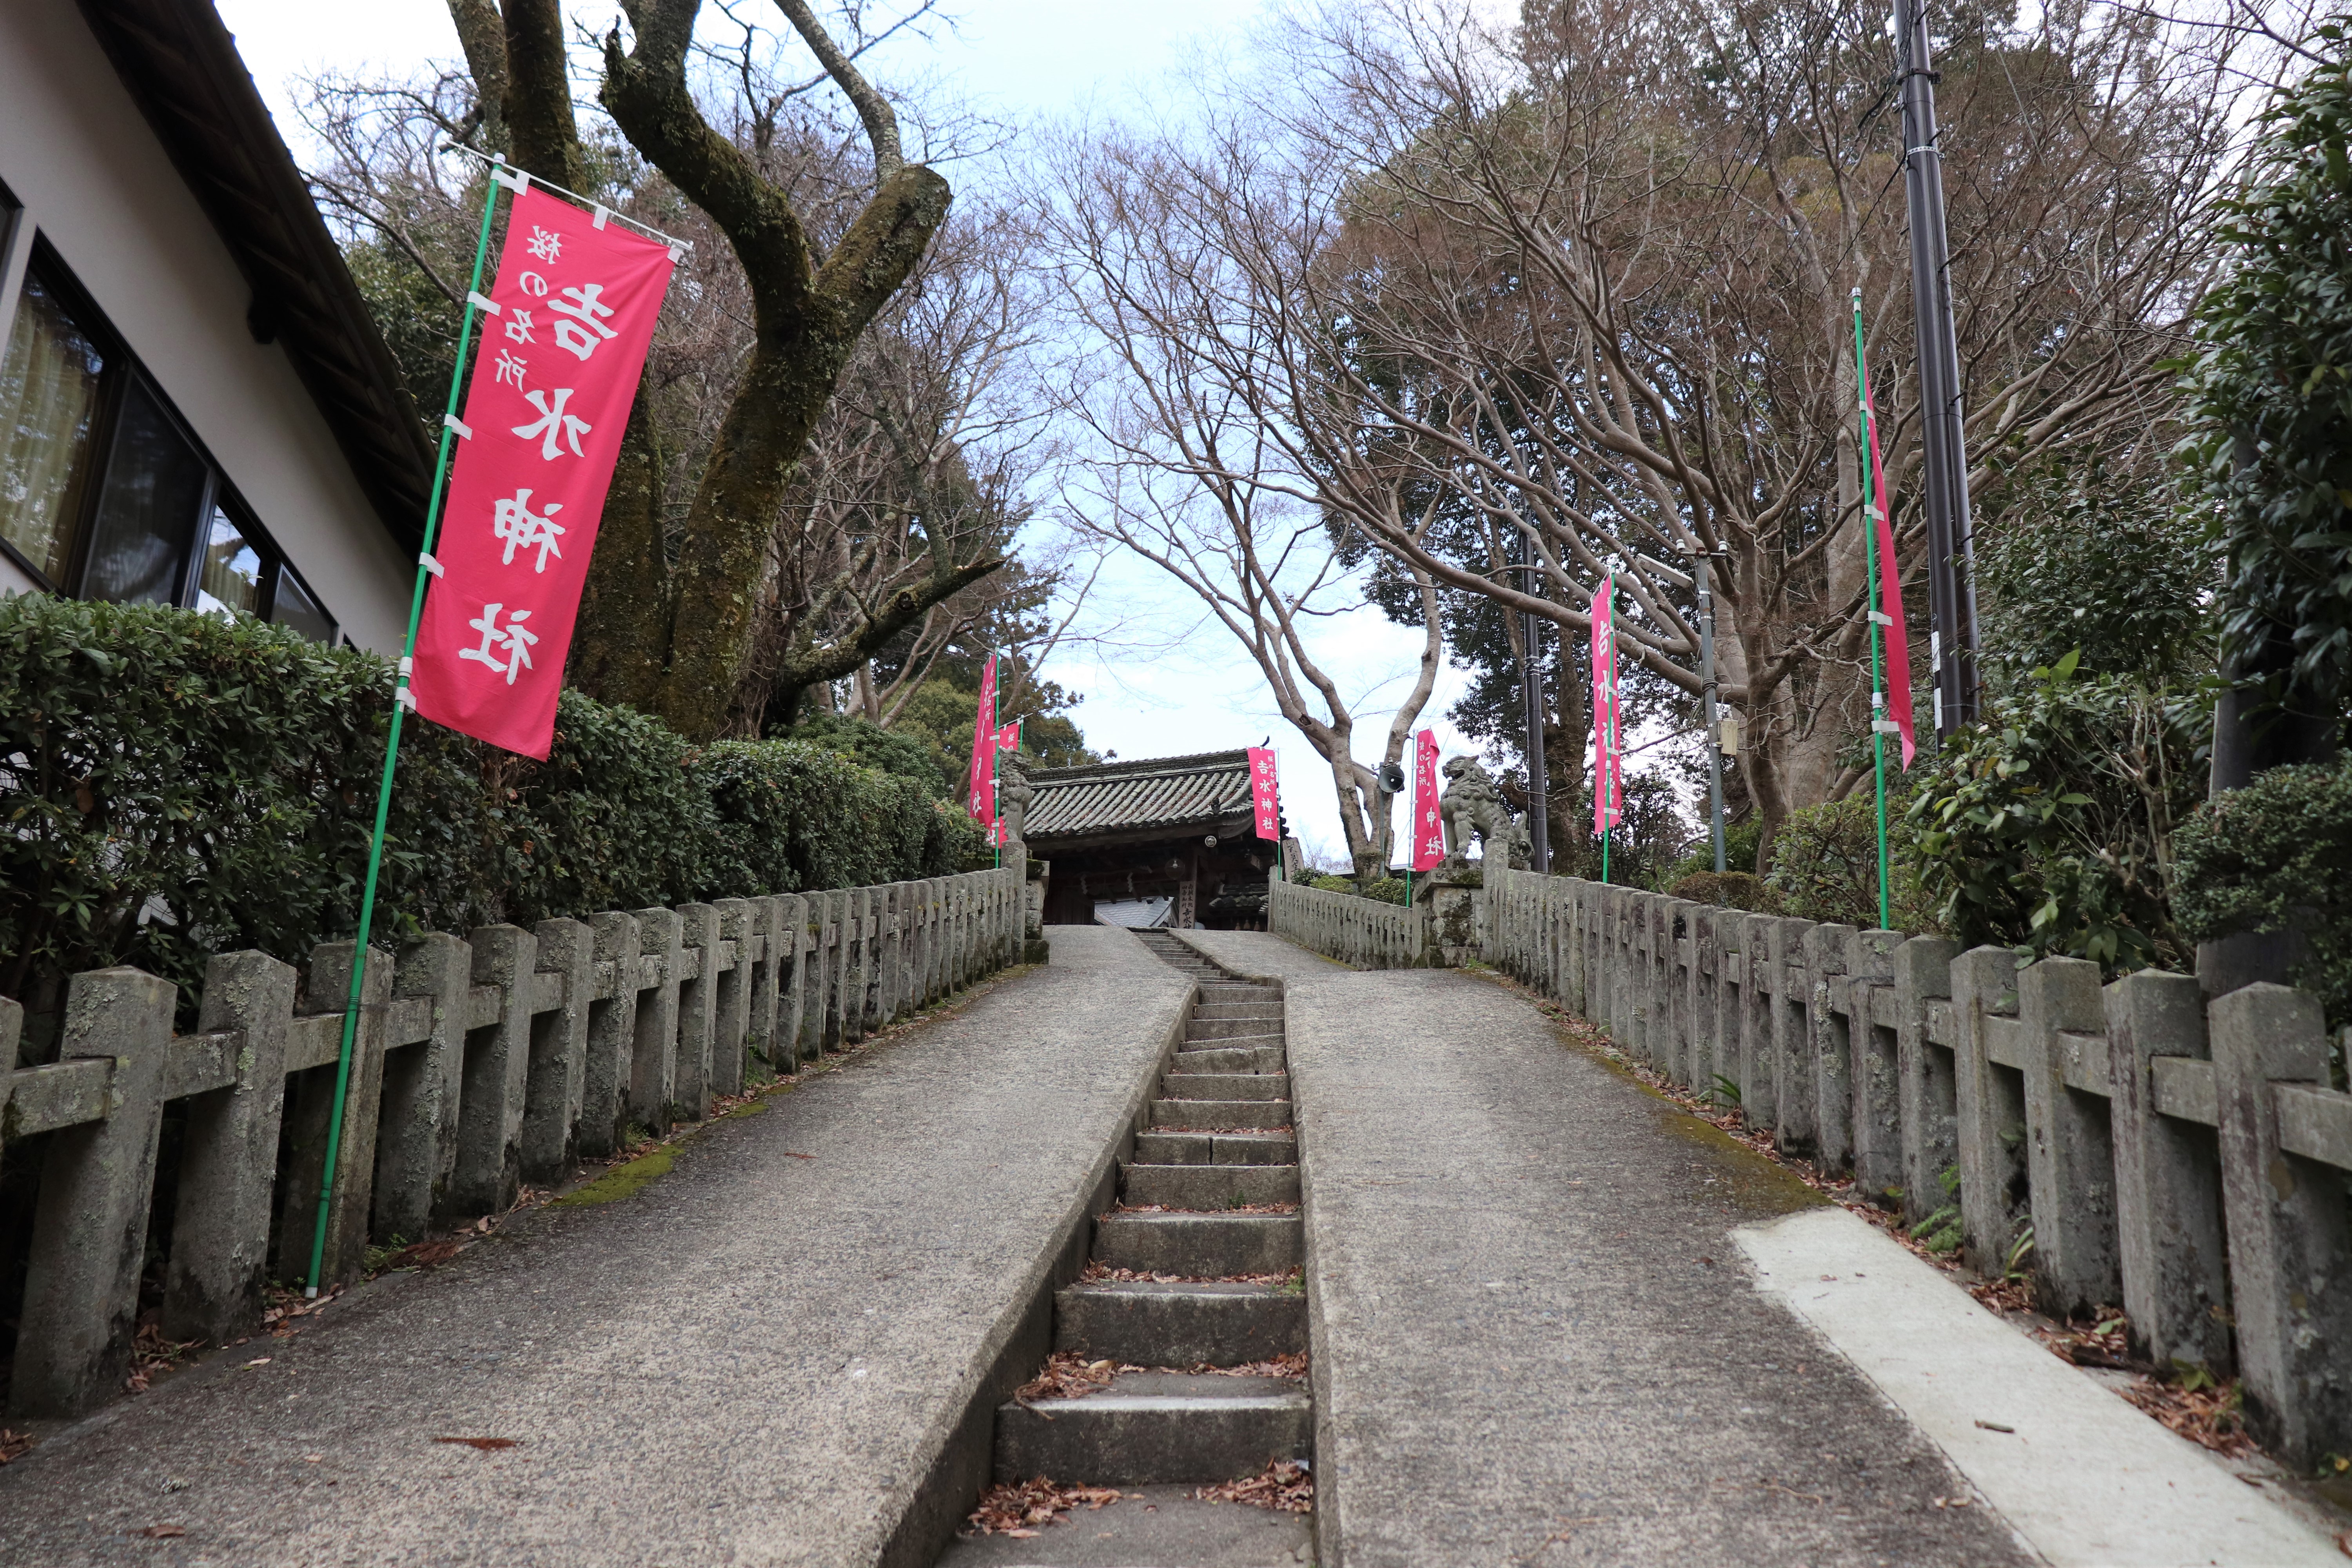 stone stairs leading up to the entrance of Yoshimizu shrine